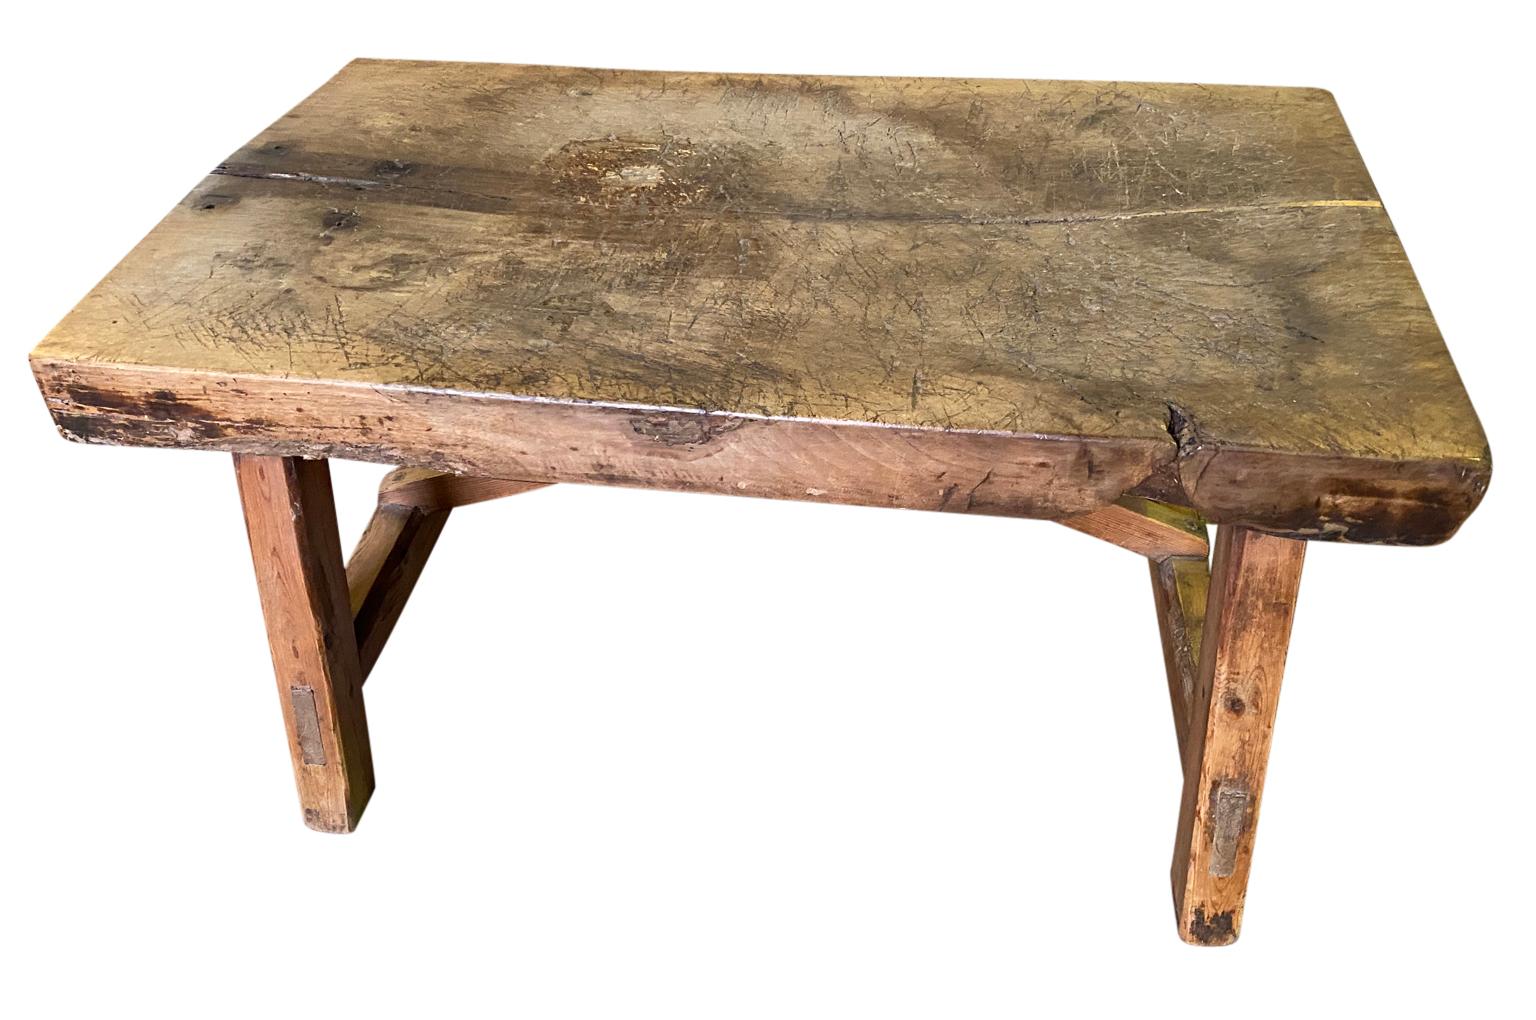 Très belle table basse du milieu du 19e siècle, provenant de la région catalane de l'Espagne. Construction solide en bois de Beeche et de hêtre. Merveilleux pour un environnement rustique ou moderne.